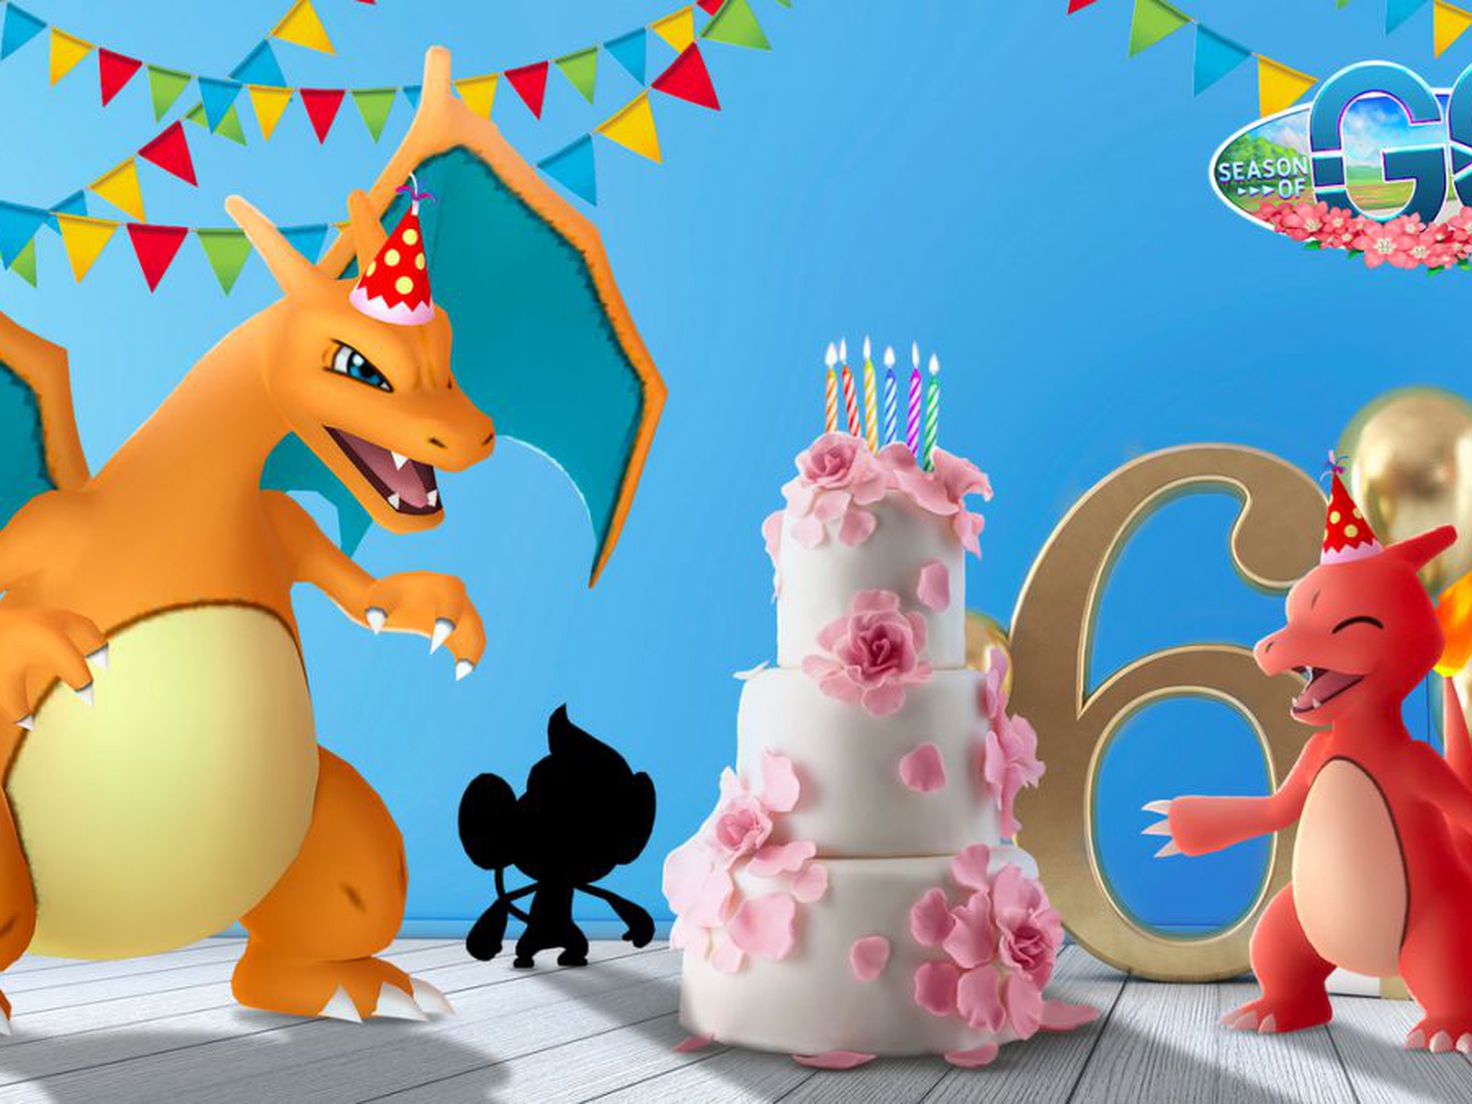 Cumpleaños Feliz, Pokemon Go